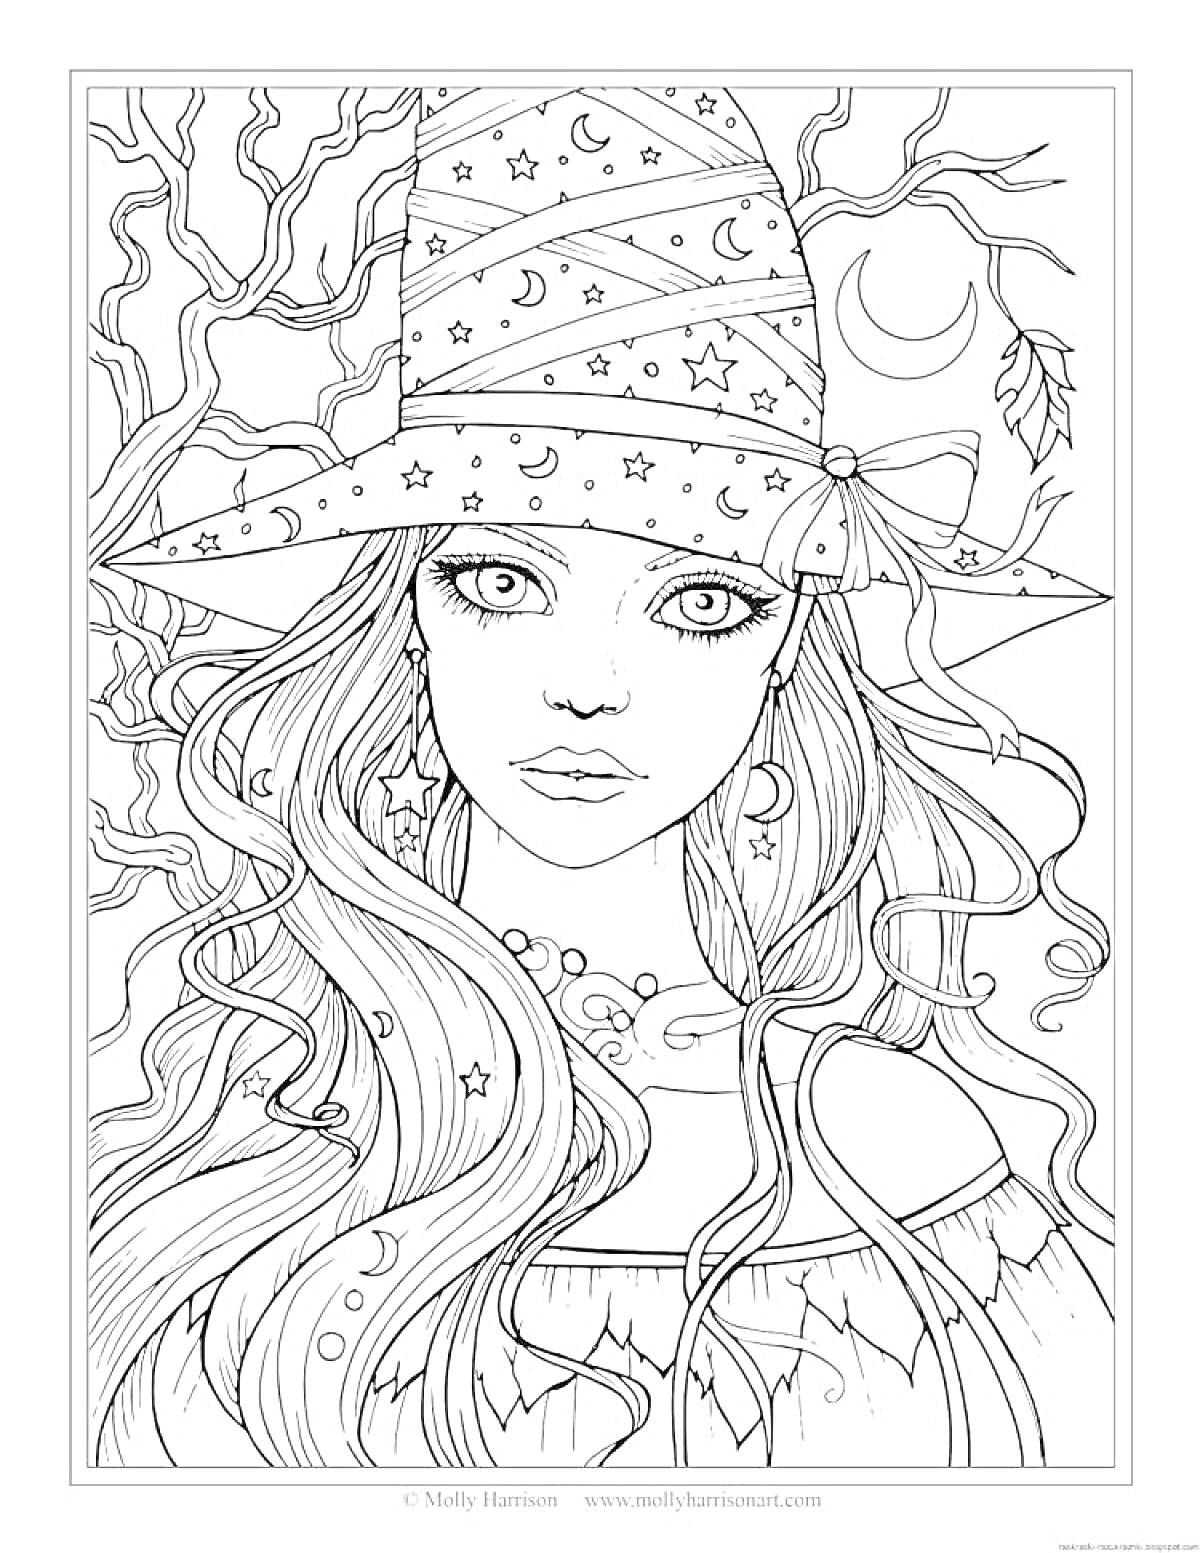 Лесная фея с длинными волосами в шляпе с узорами и лунным ожерельем на фоне деревьев